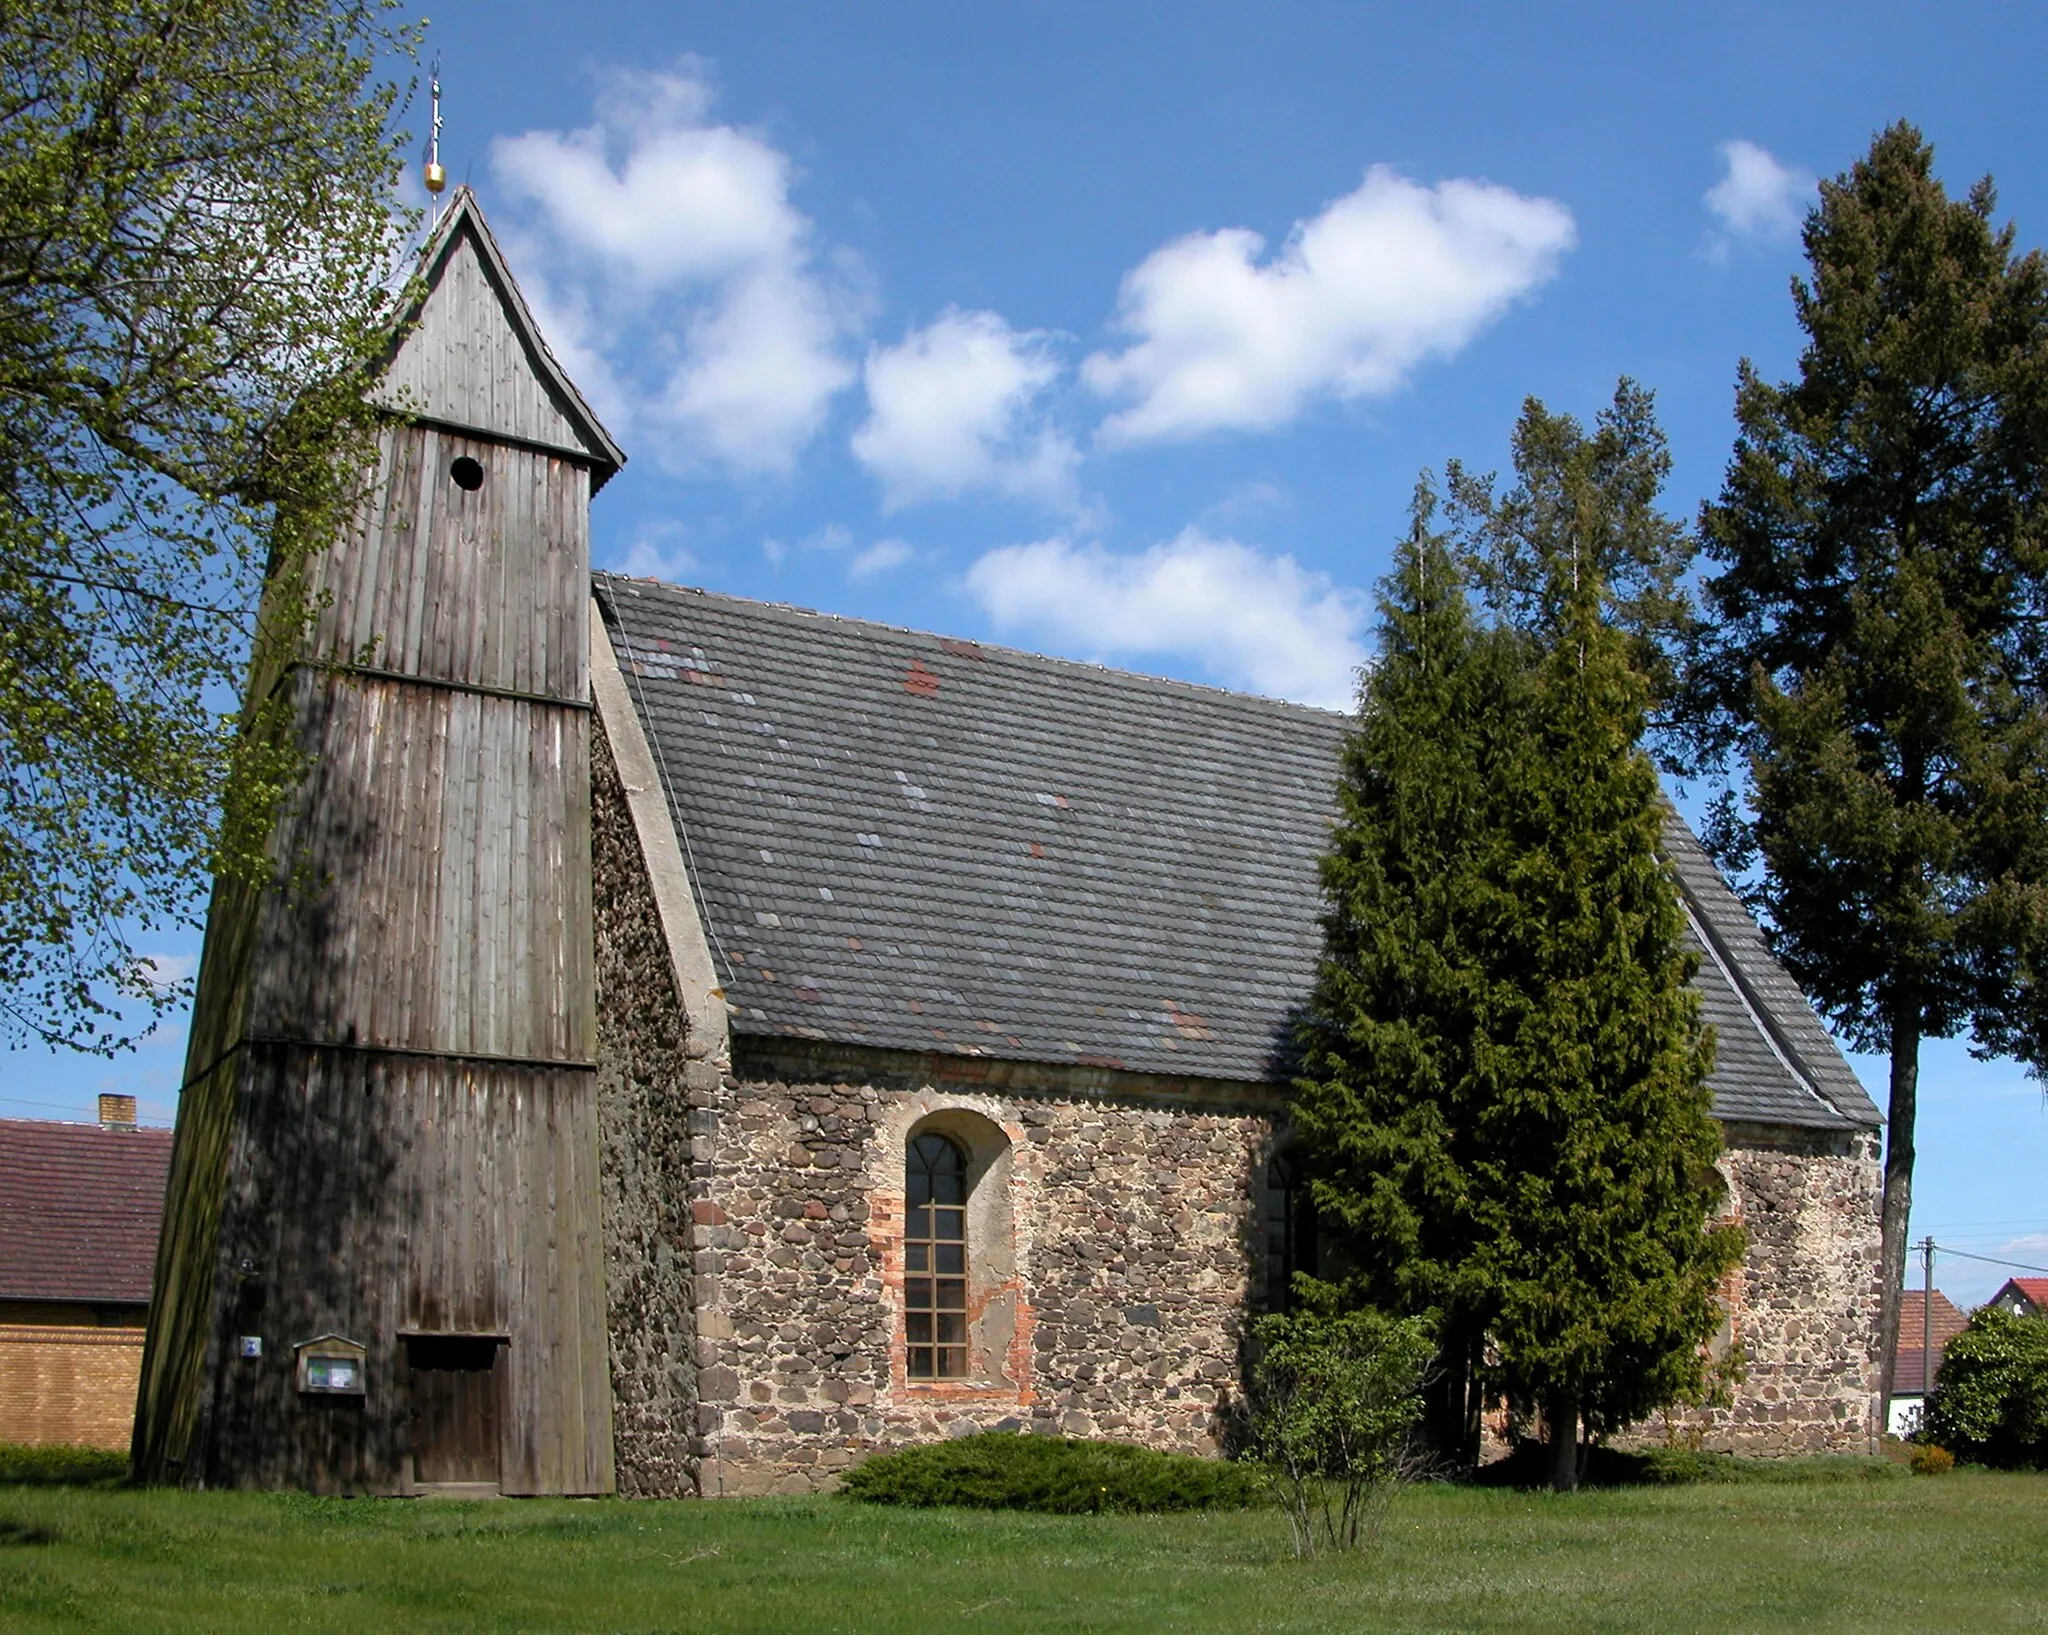 Photo showing: 29.04.2015    03246  Gahro (Crinitz): Dorfkirche St. Johannes (GMP: 51.738366,13.724868). Die evangelische Kirche wurde im 14. Jahrhundert aus Feldsteinen errichtet. Der Saalbau verfügt im Westen über einen hölzernen Glockenturm aus dem 18. Jahrhundert, der im 19. Jahrhundert erneuert wurde.                                                                                                                                                                                                          [DSCN5061.JPG]20150429215DR.JPG(c)Blobelt